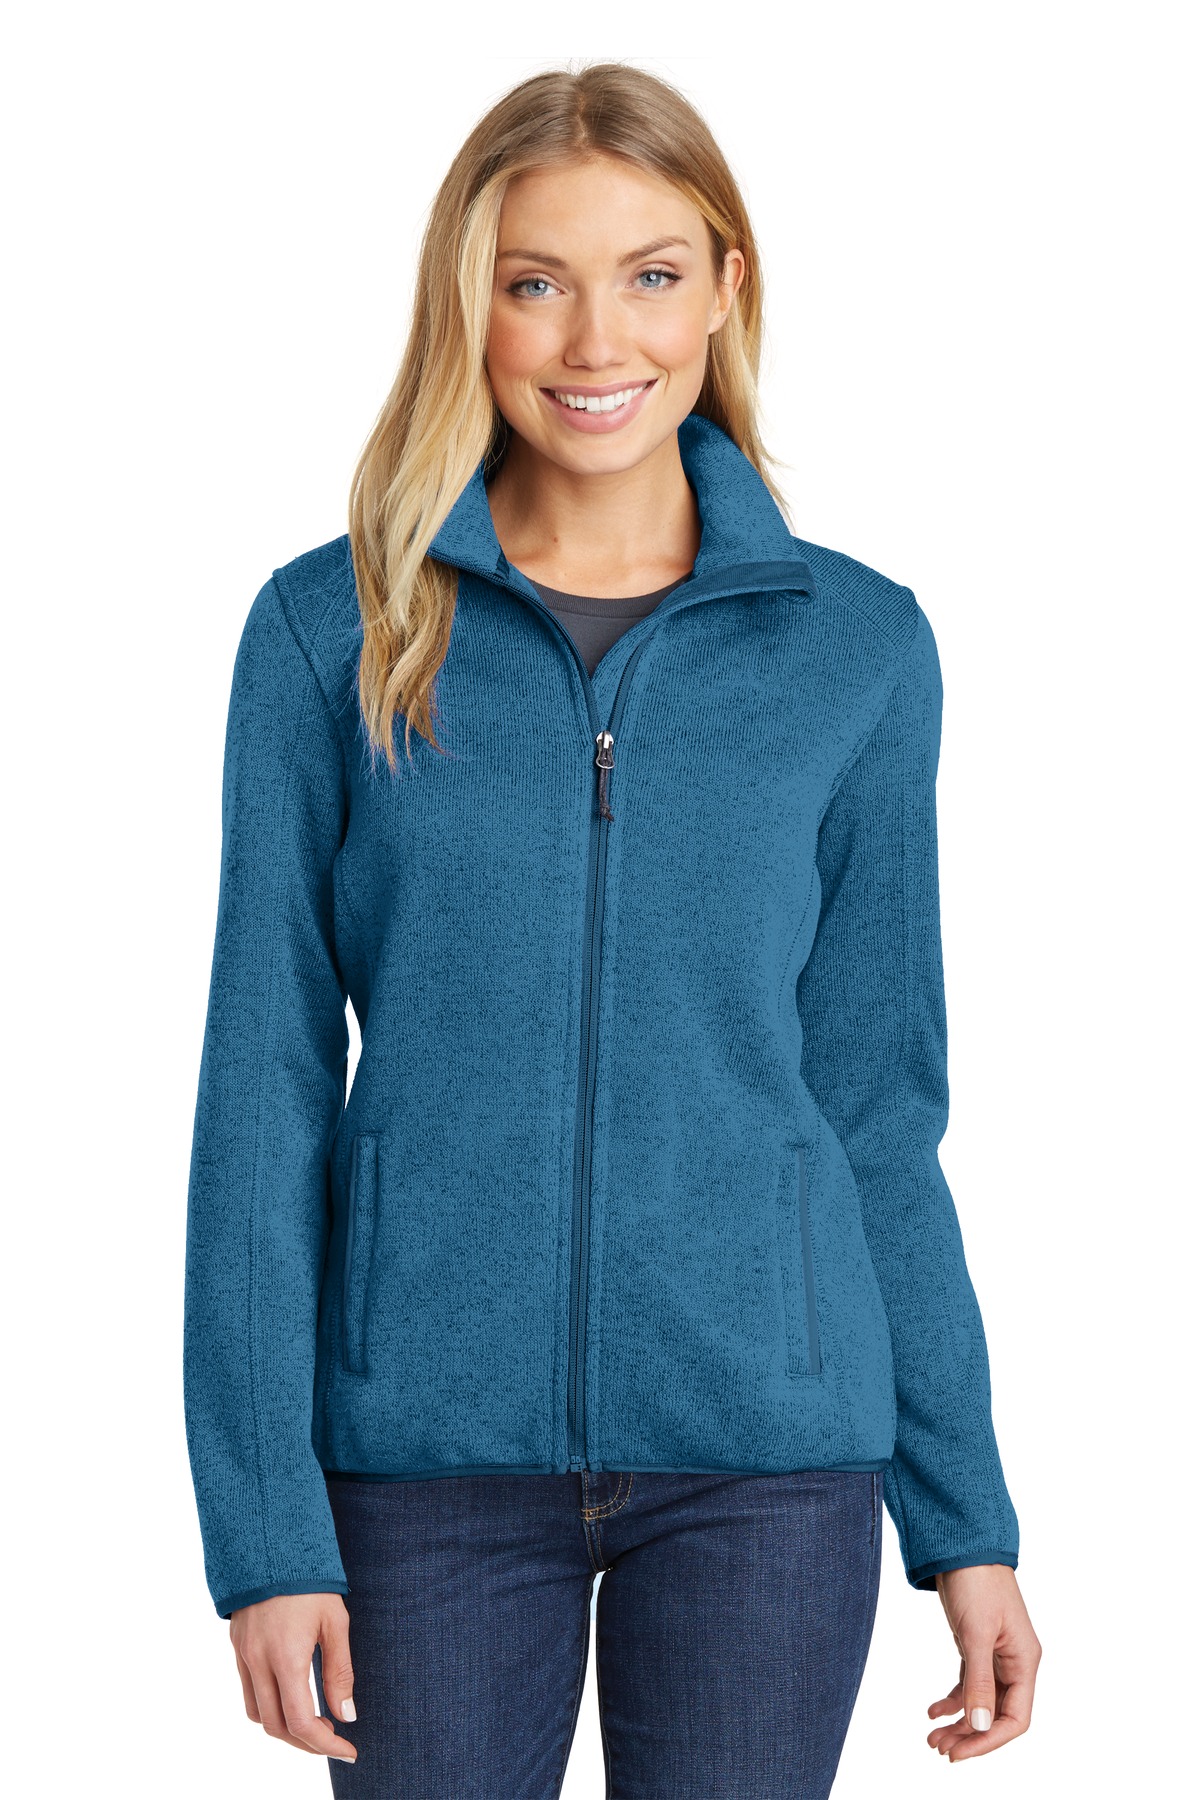 Sweater Fleece Jacket - image 1 of 1